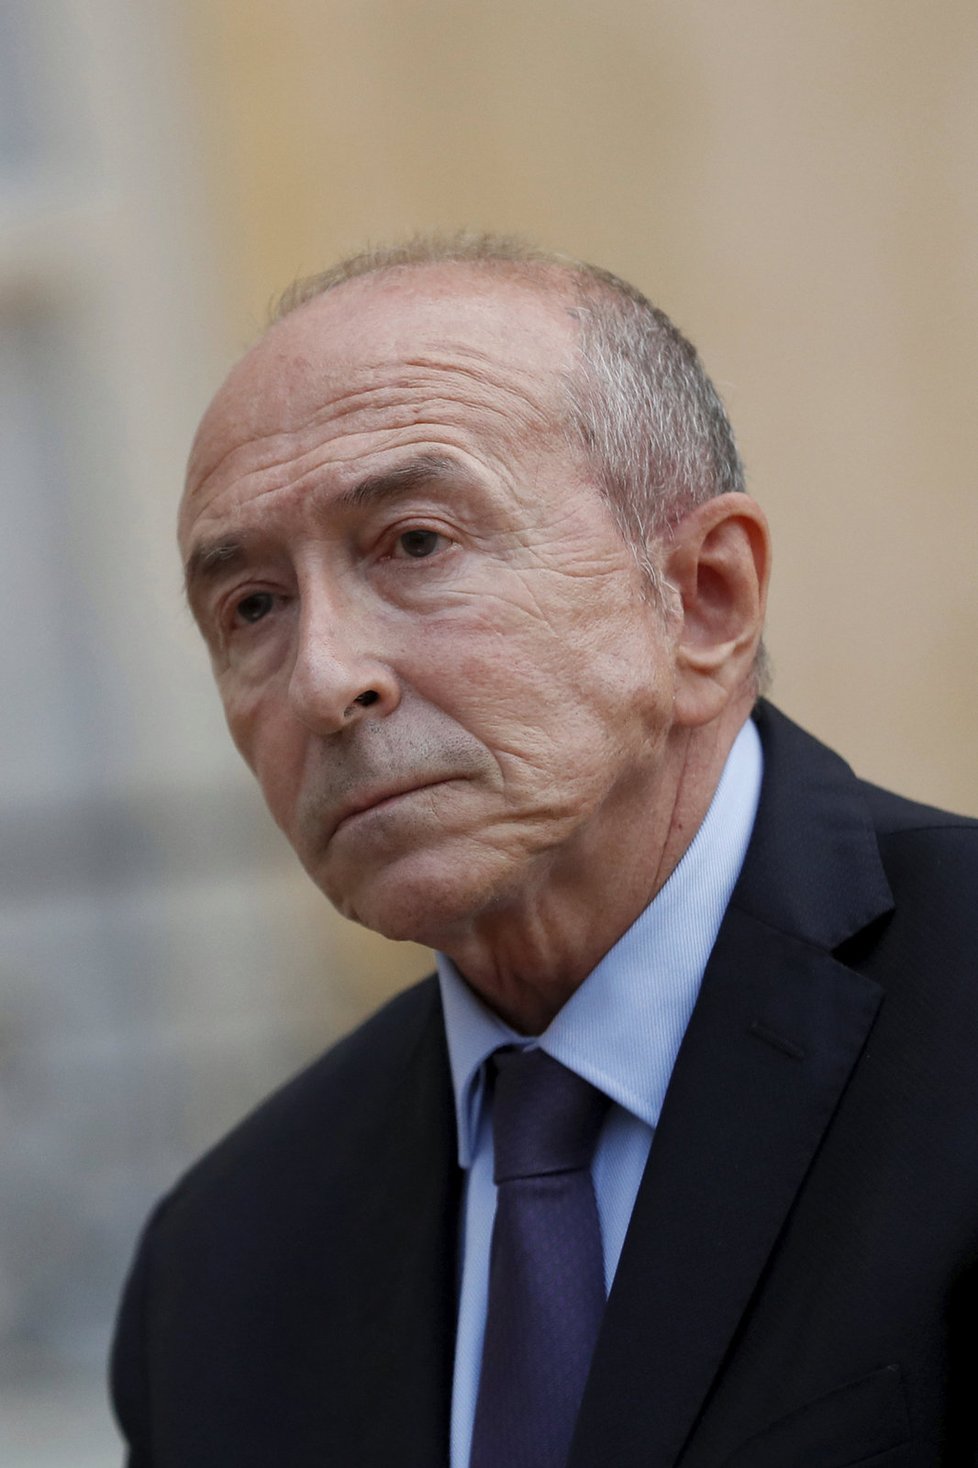 Francouzský ministr vnitra Gérard Collomb odsoudil zločiny s antisemitským podtextem.